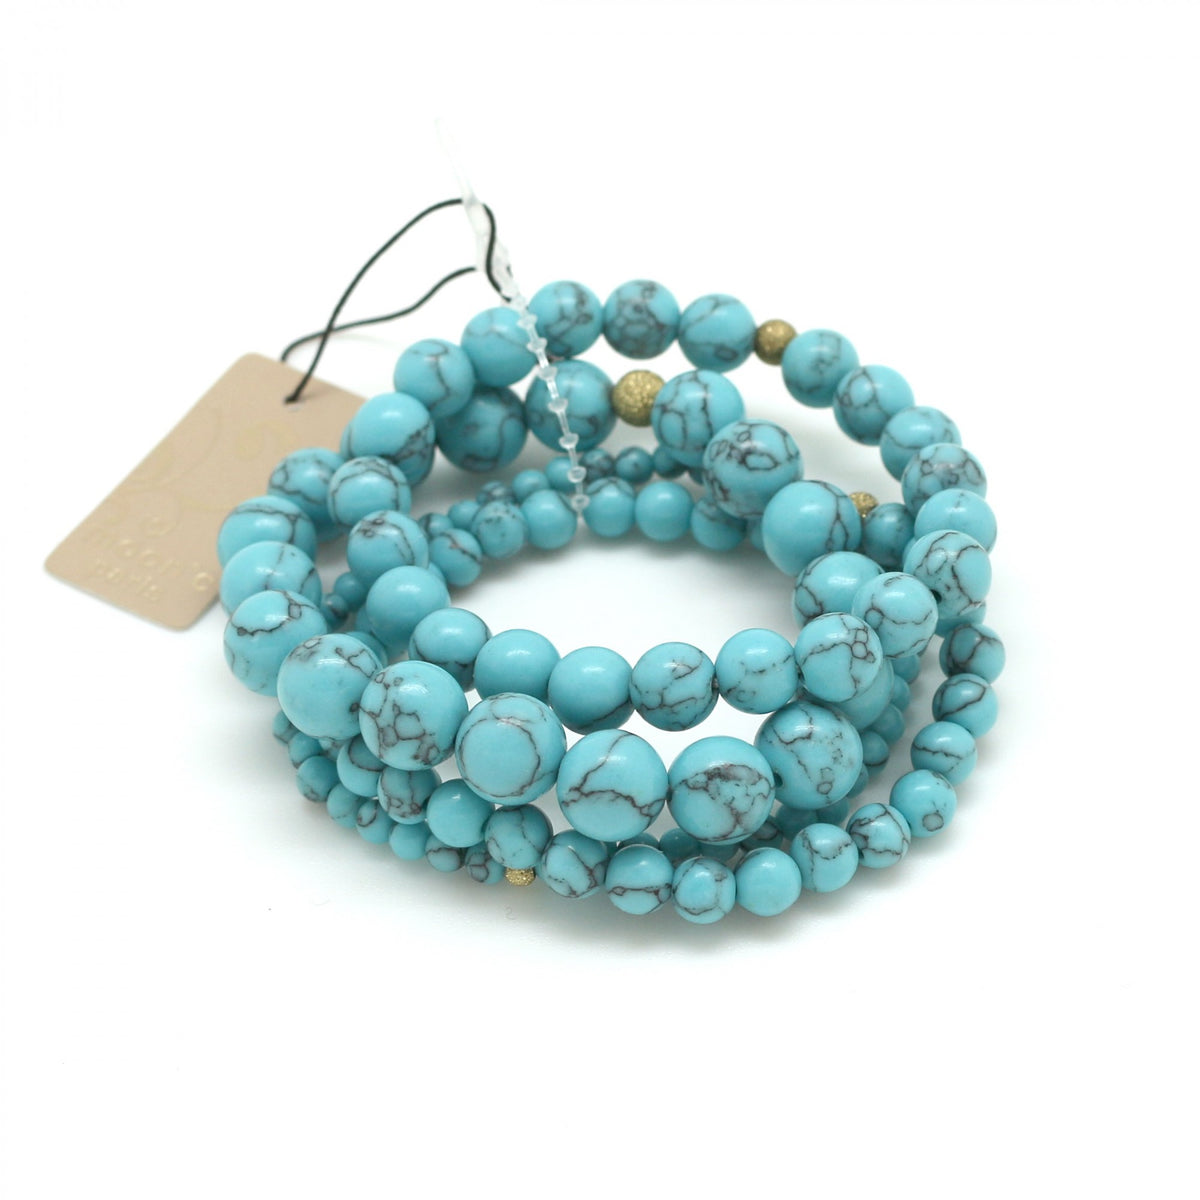 4 Turquoise bracelets “INNER STRENGTH”